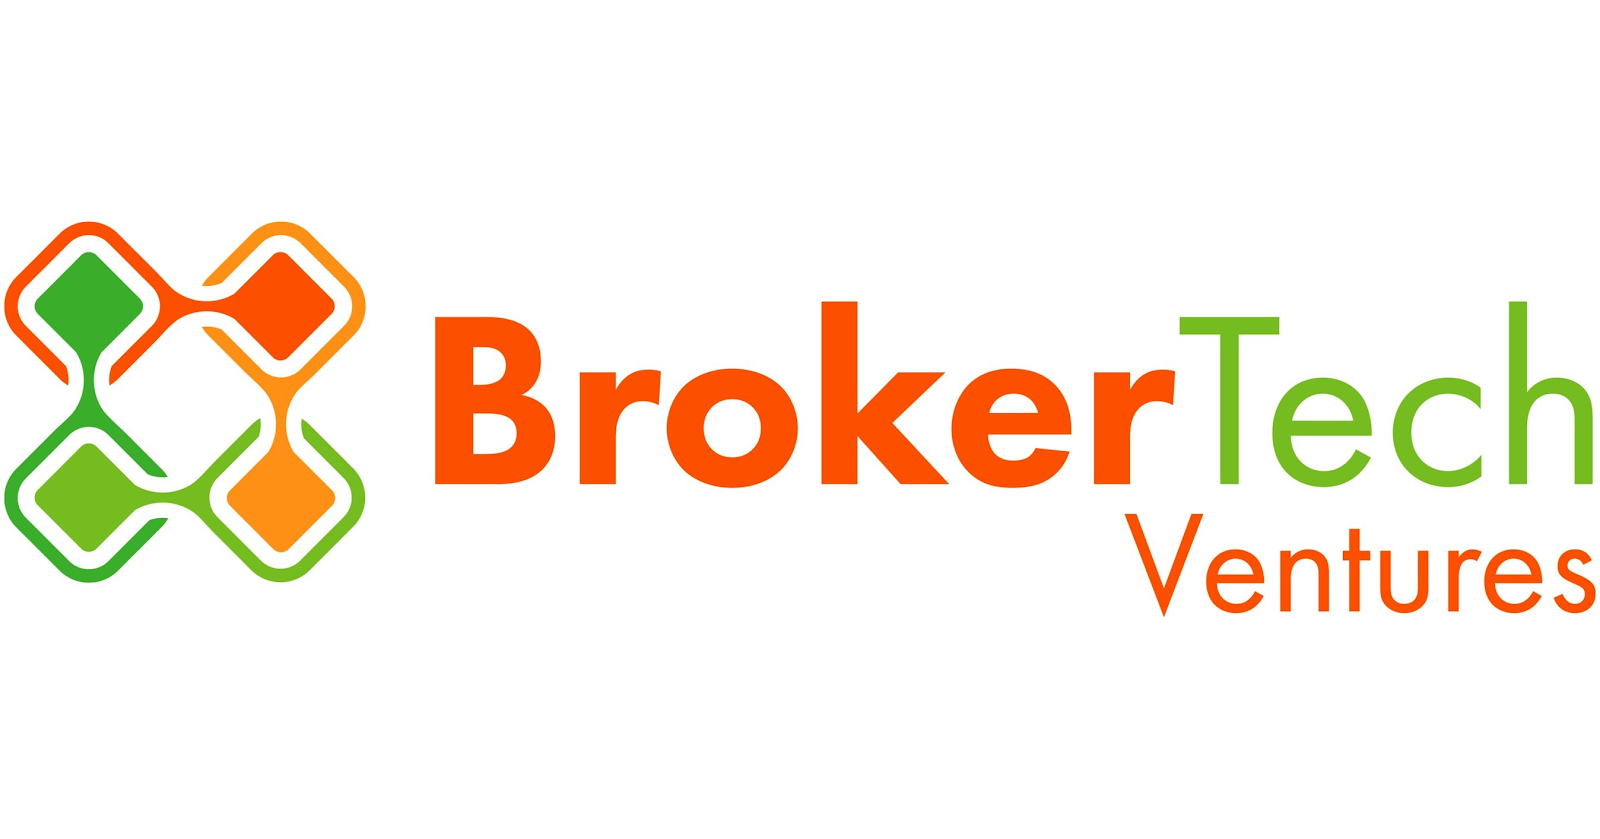 BrokerTech Ventures Accelerator